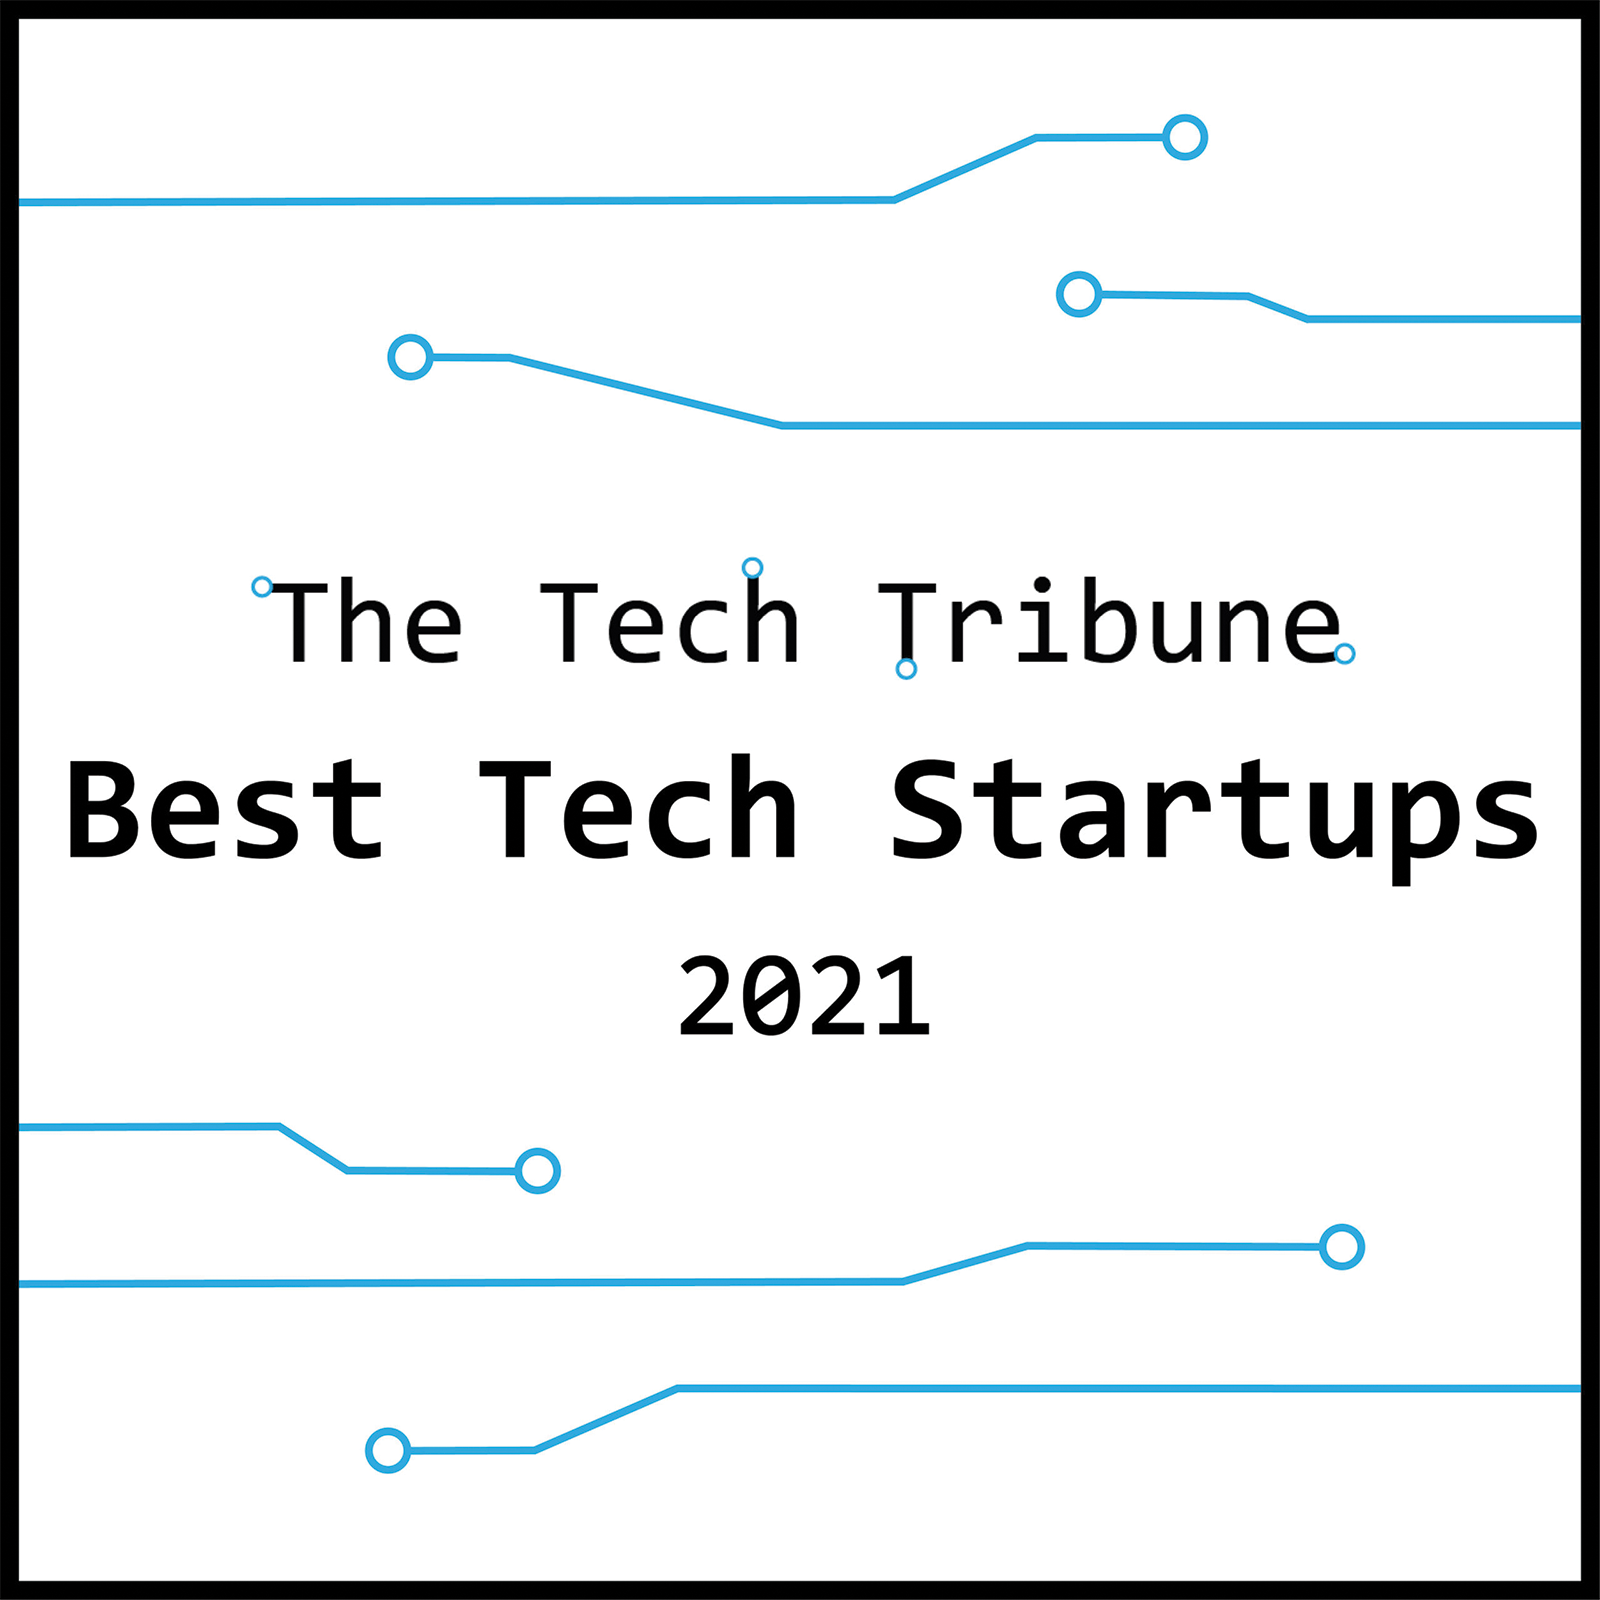 Best Tech Startup 2021